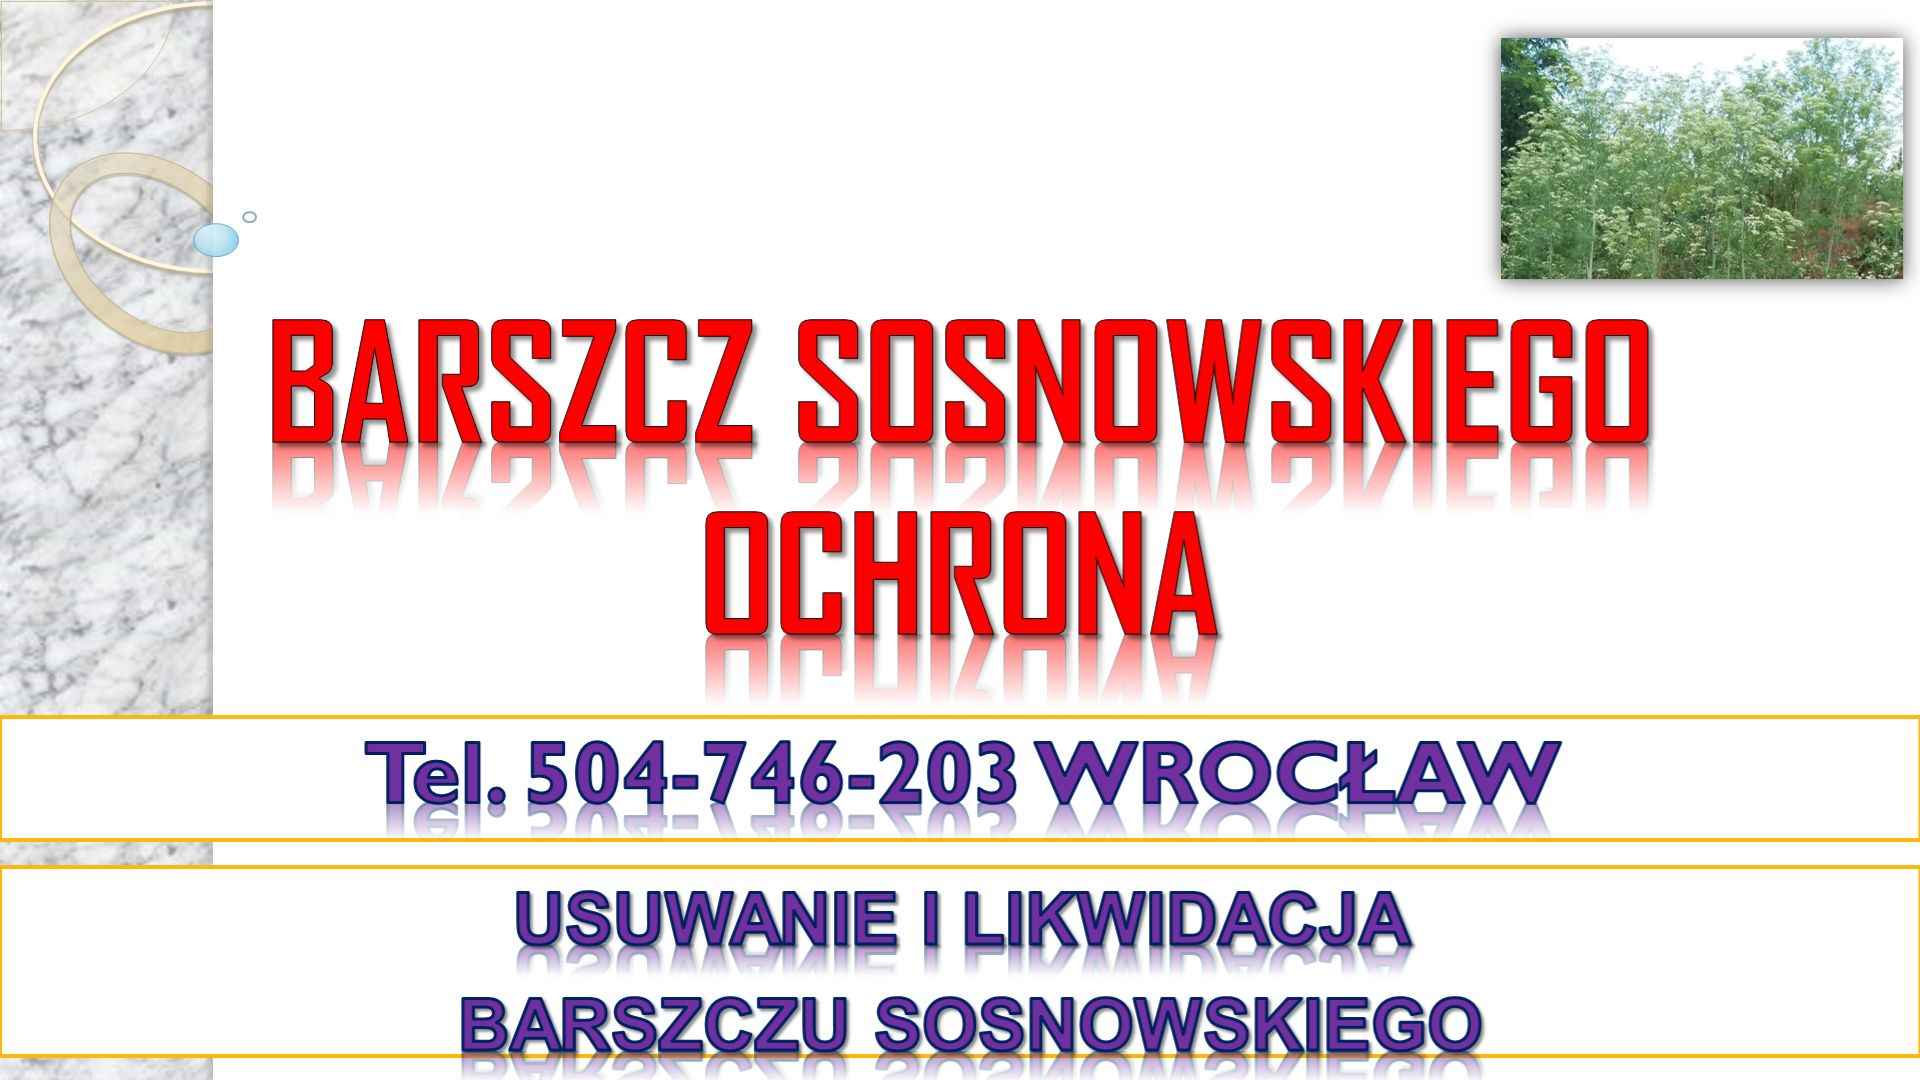 Usuwanie barszczu Sosnowskiego, cena, tel. 504-746-203, Wrocław. Psie Pole - zdjęcie 4